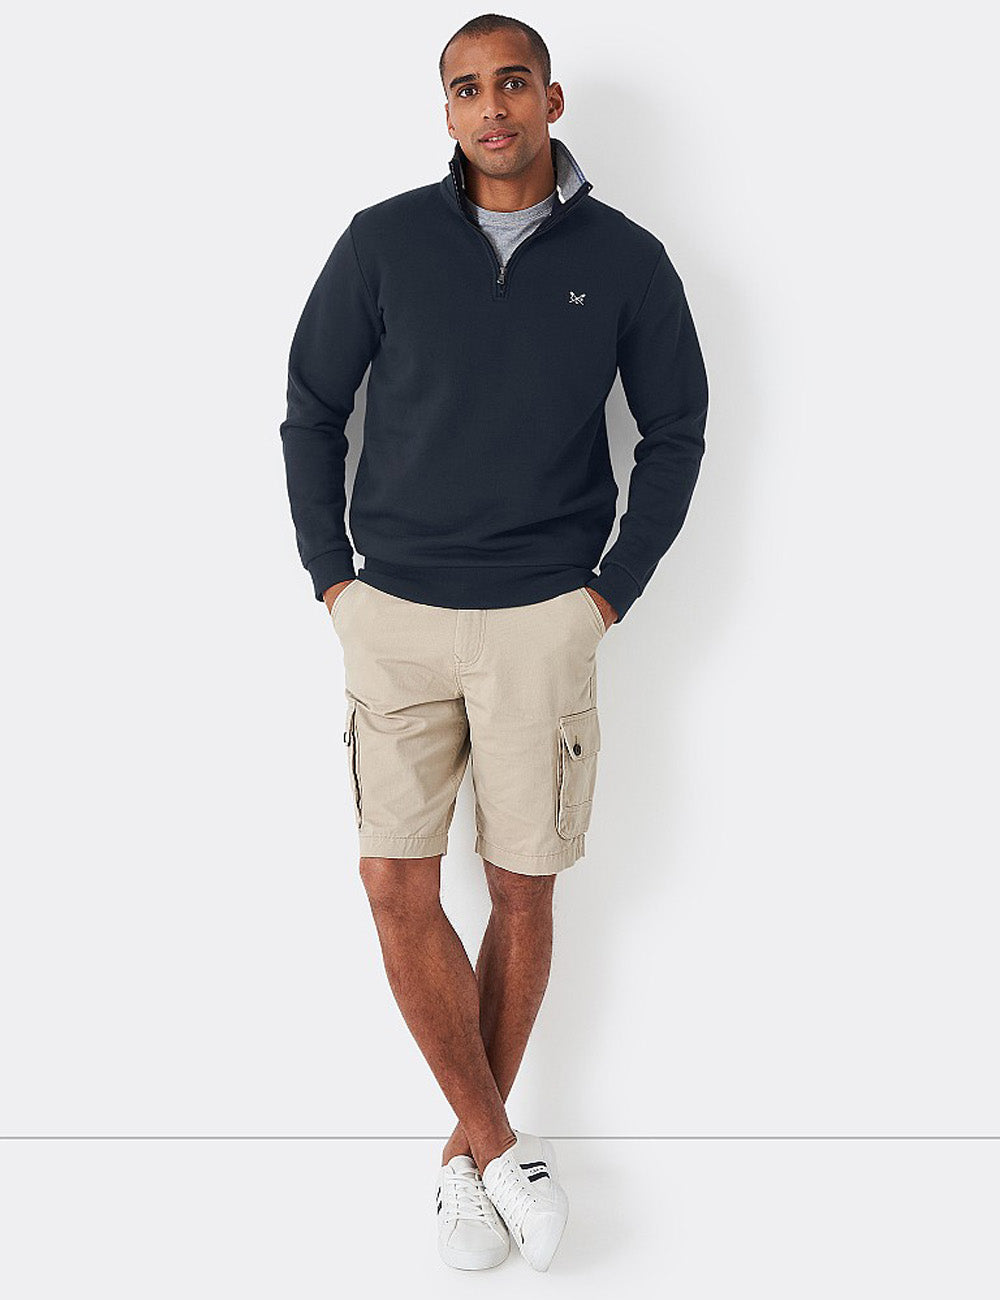 Crew Clothing Classic 1/2 Zip Sweatshirt - Navy